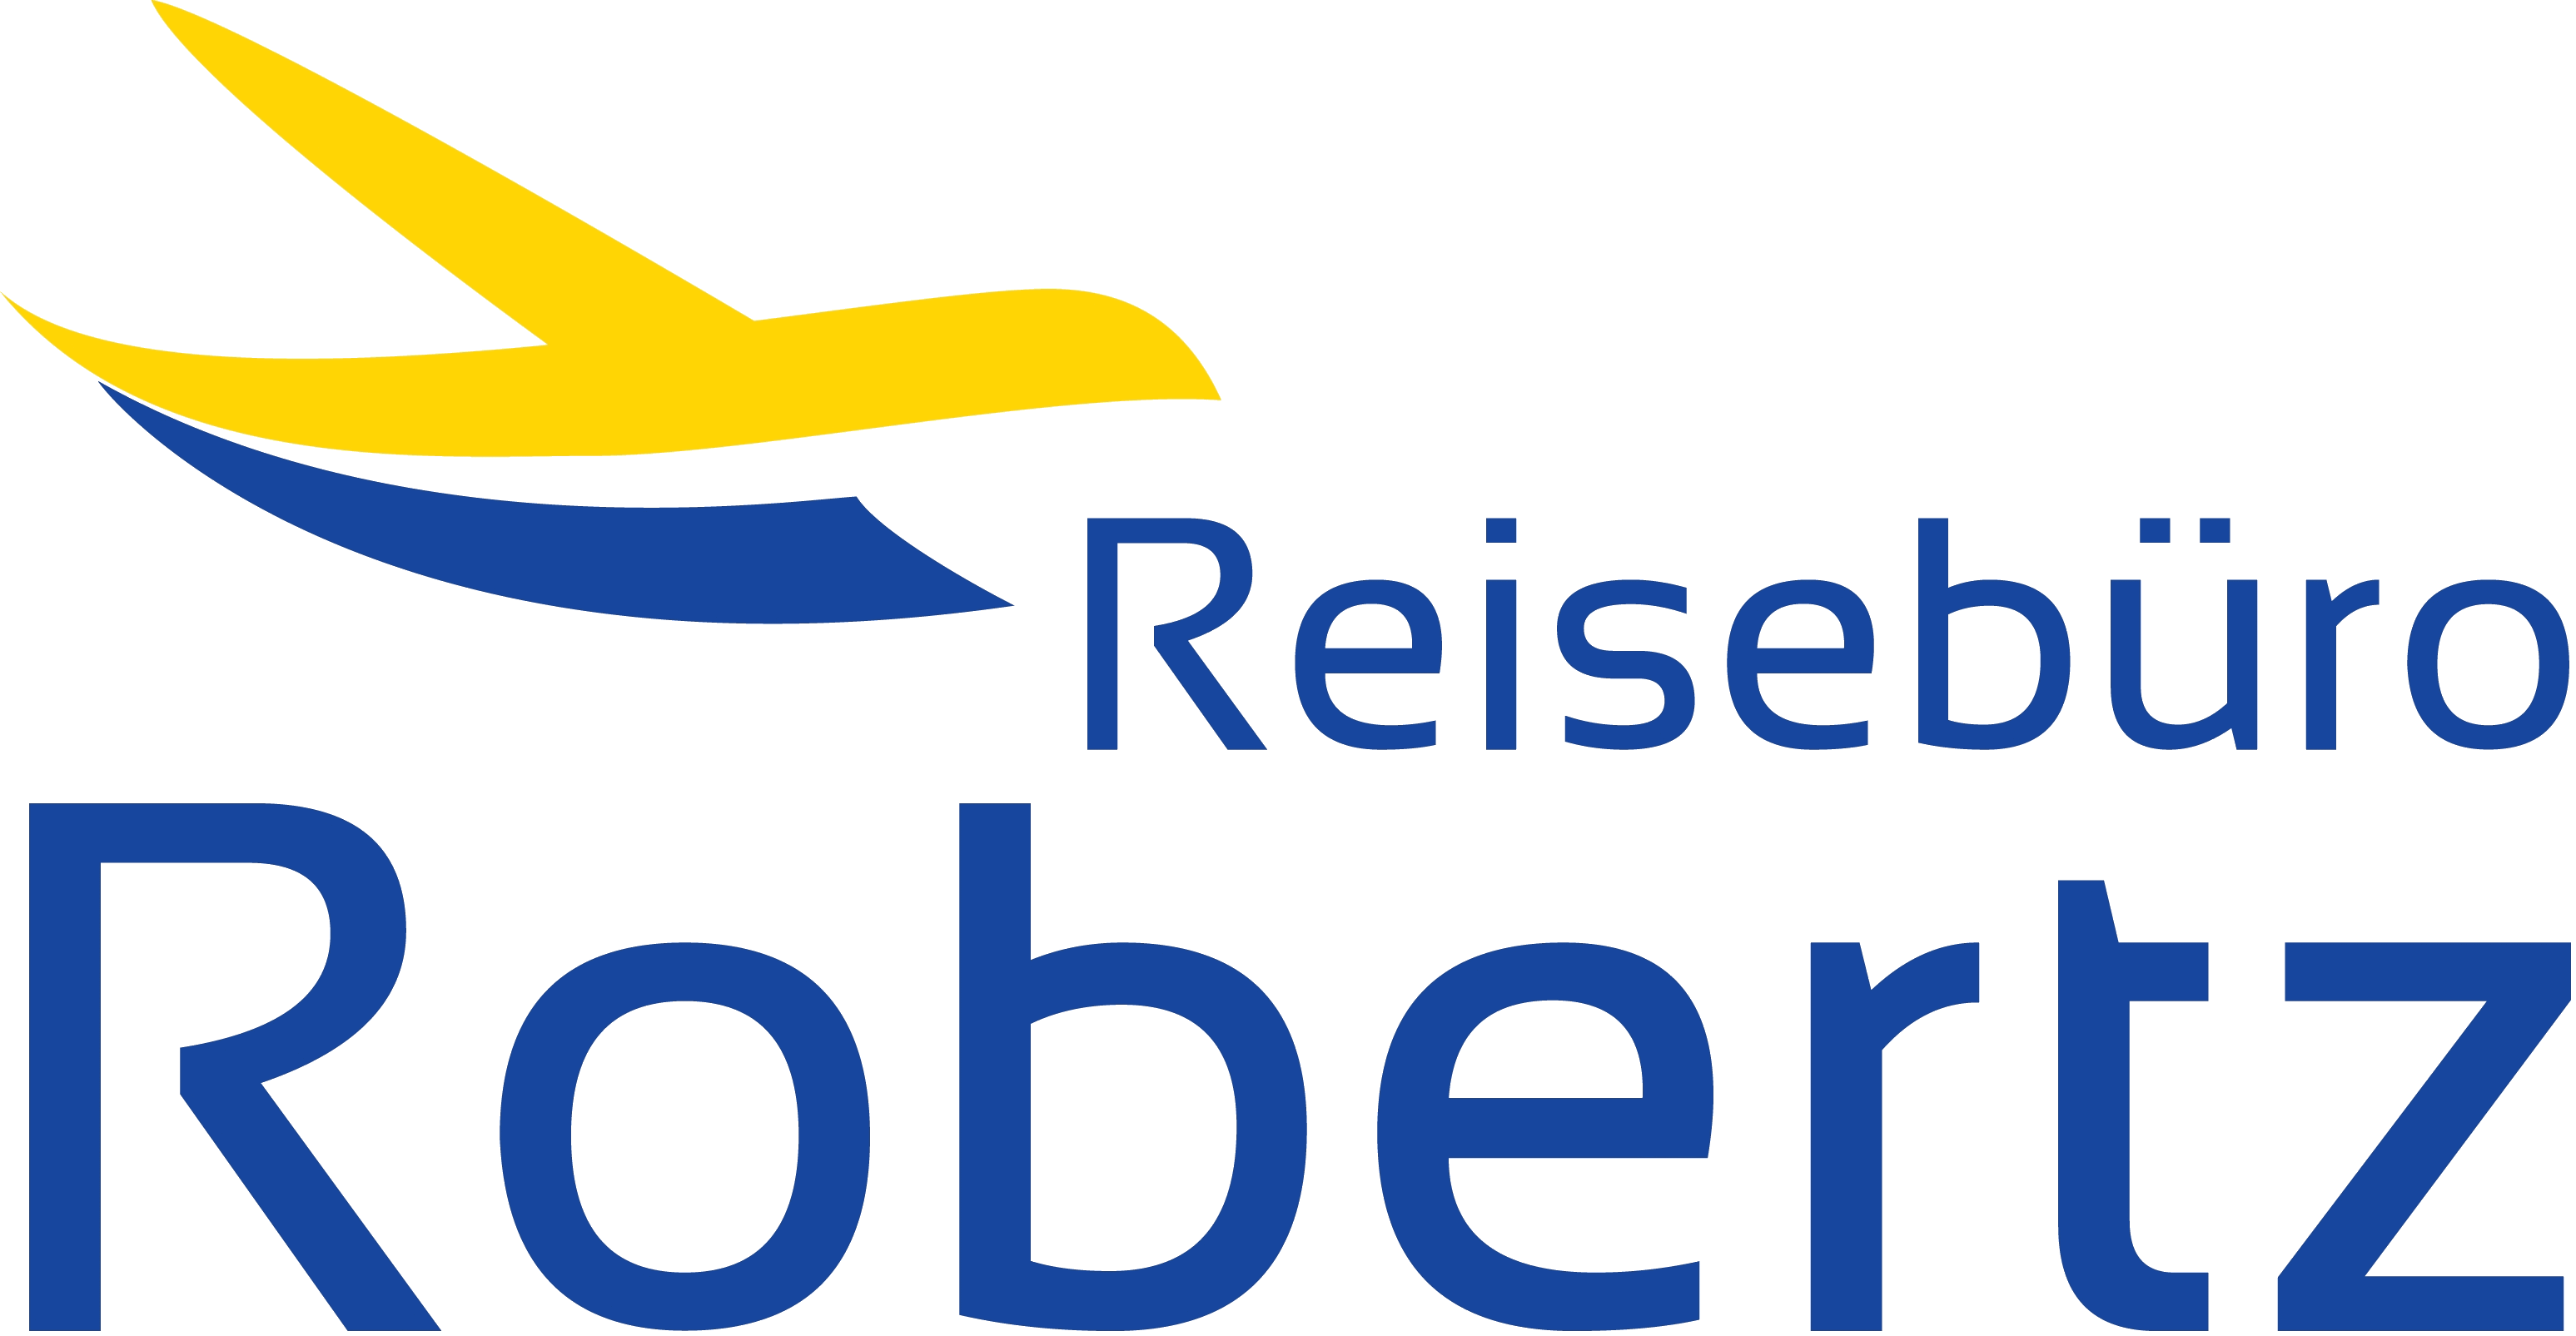 Reisebüro Robertz Logo